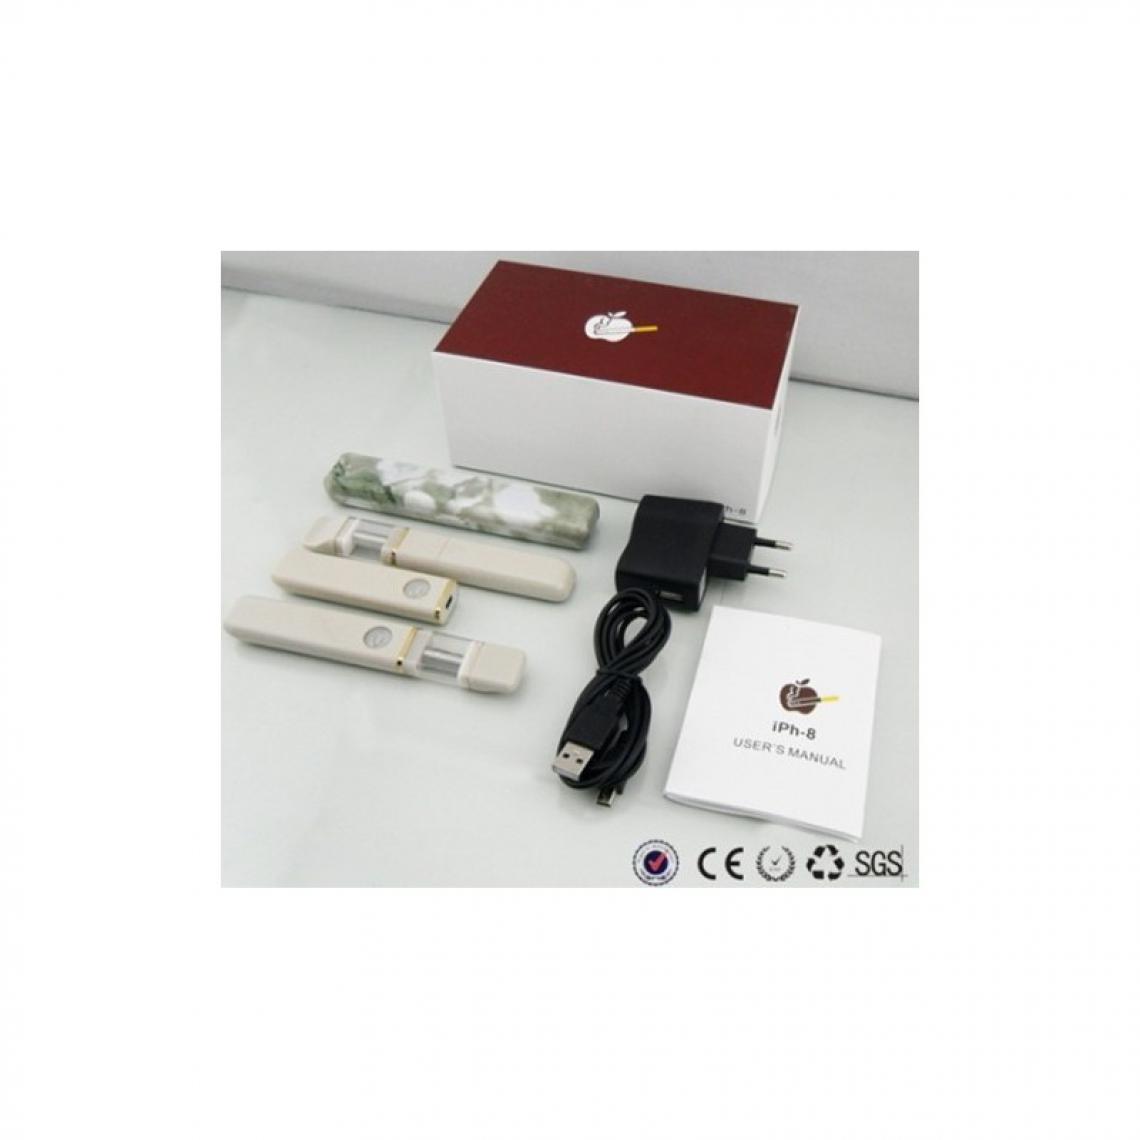 Besking - Cigarette Electronique IPH-8 Double (Blanc) - Cendriers